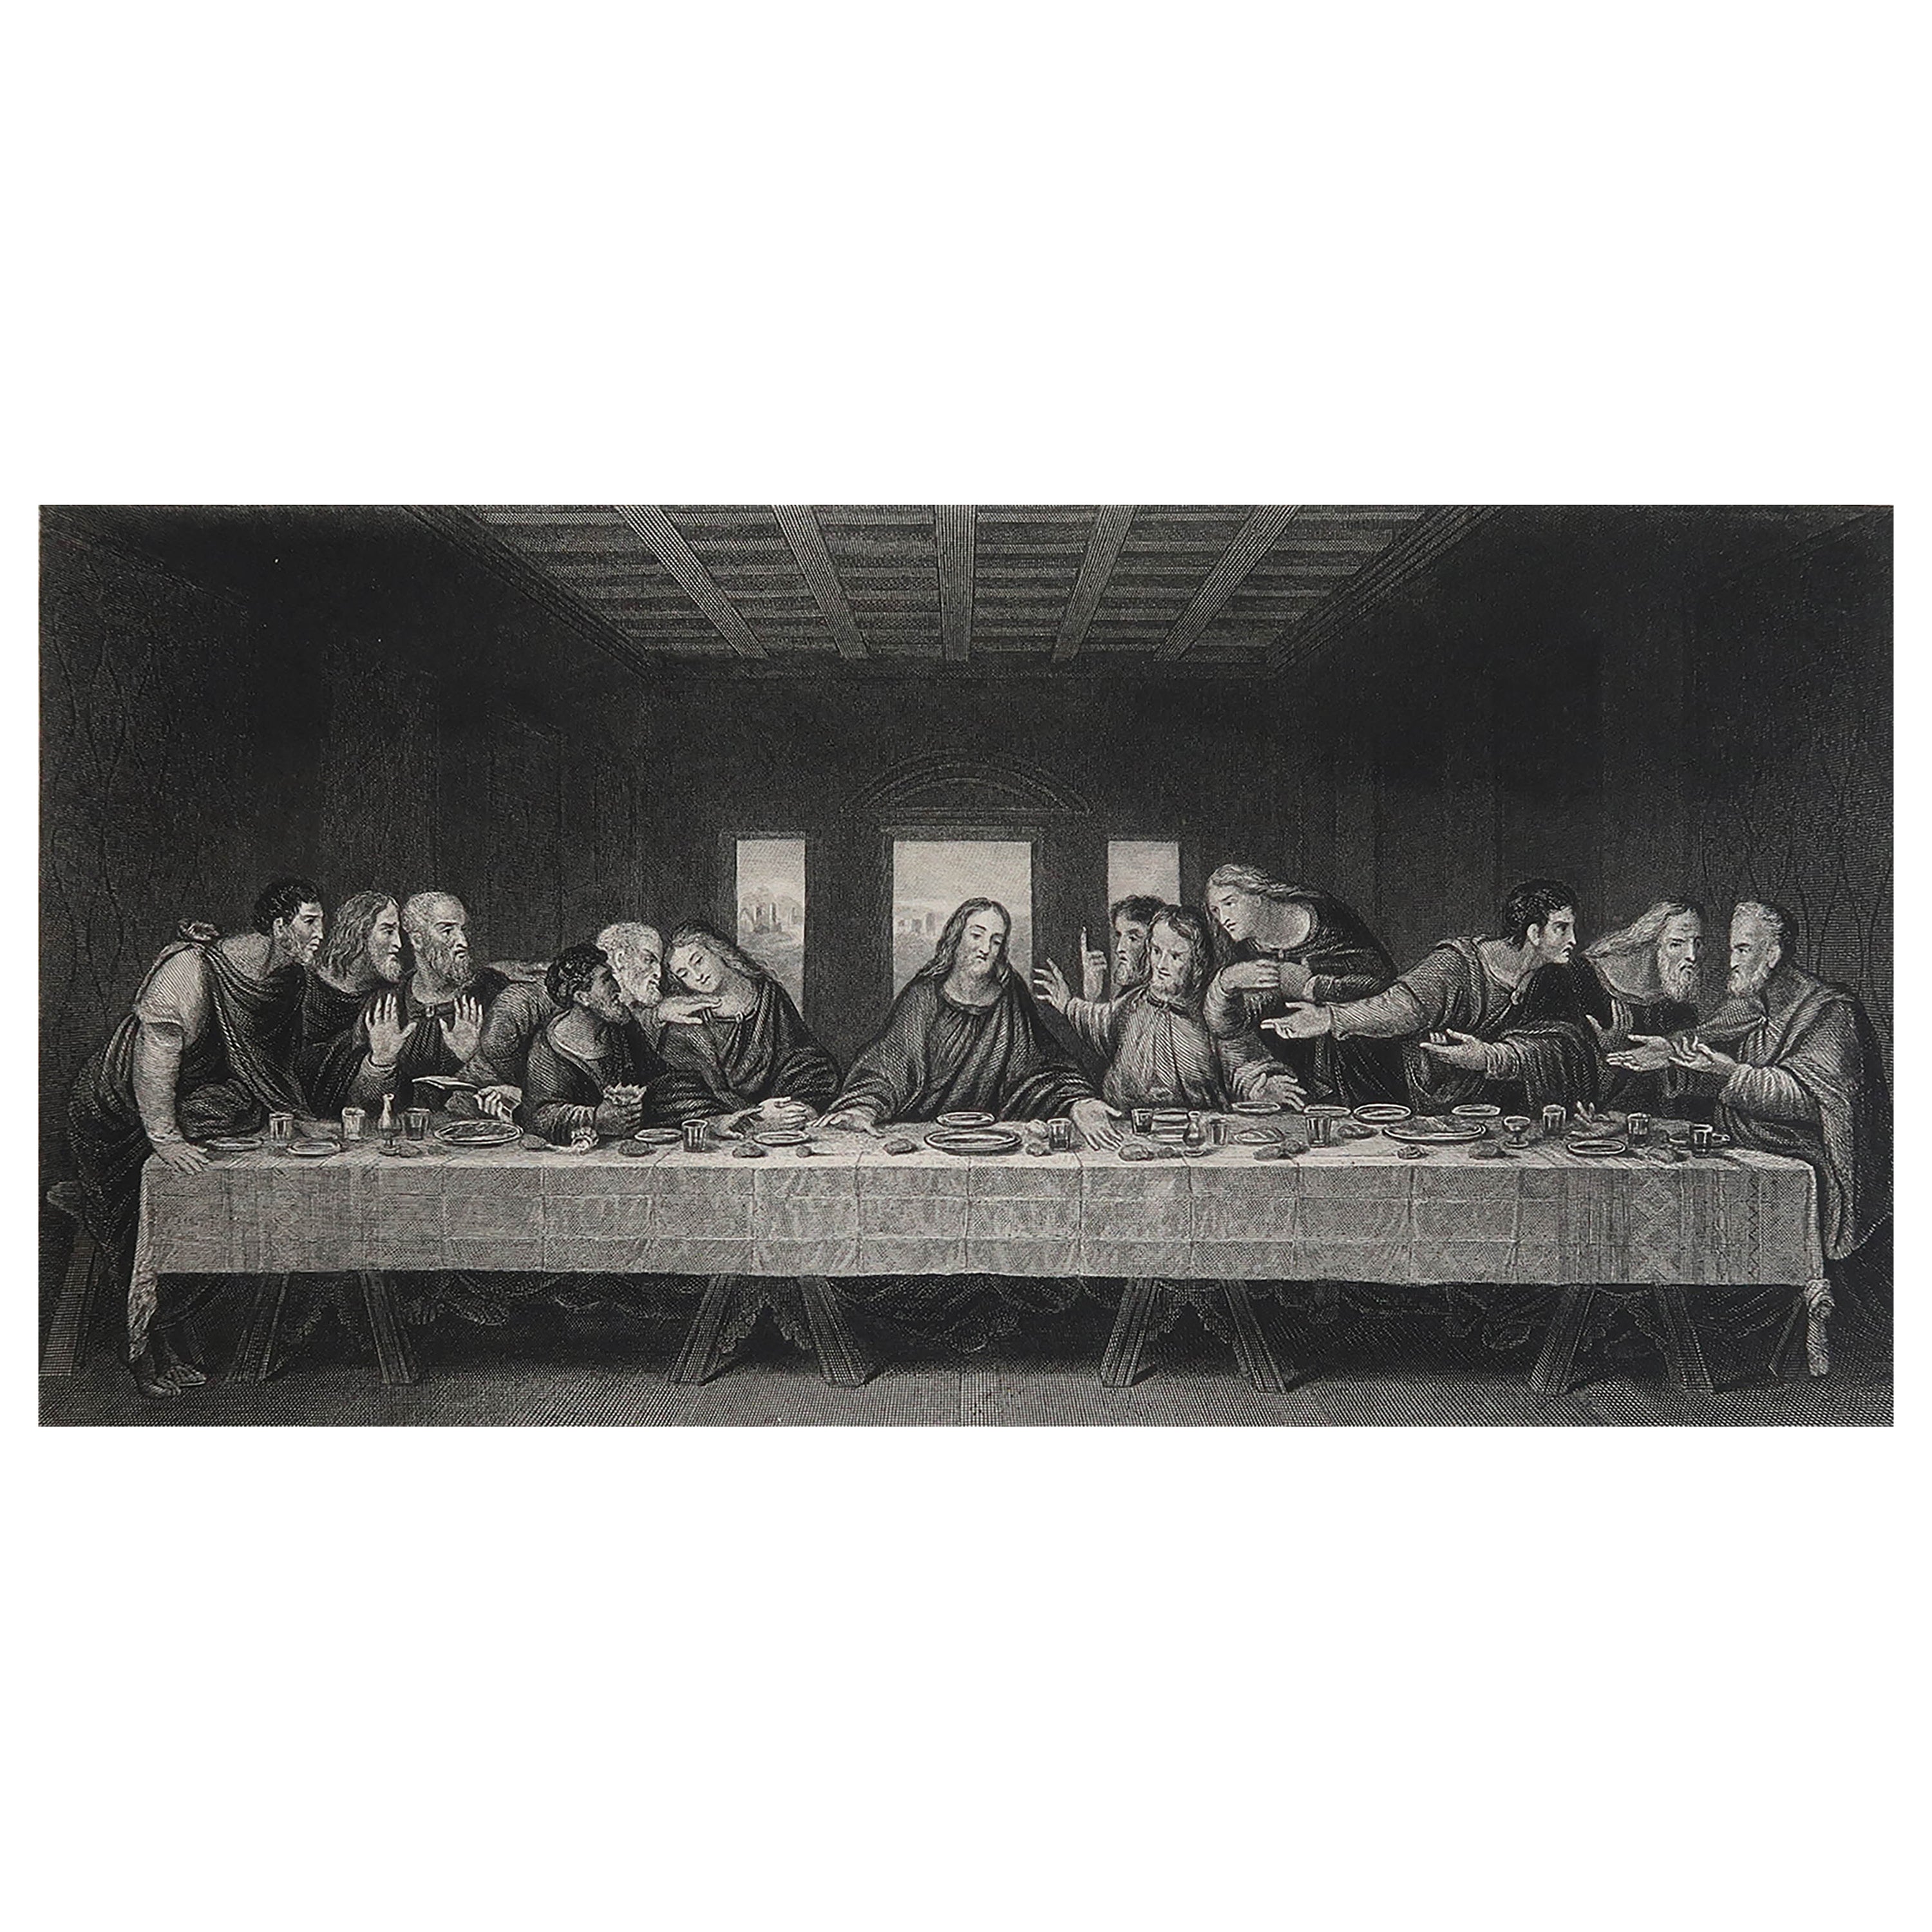 Originaler antiker Druck nach Leonardo Da Vinci, letzter Supper, um 1850